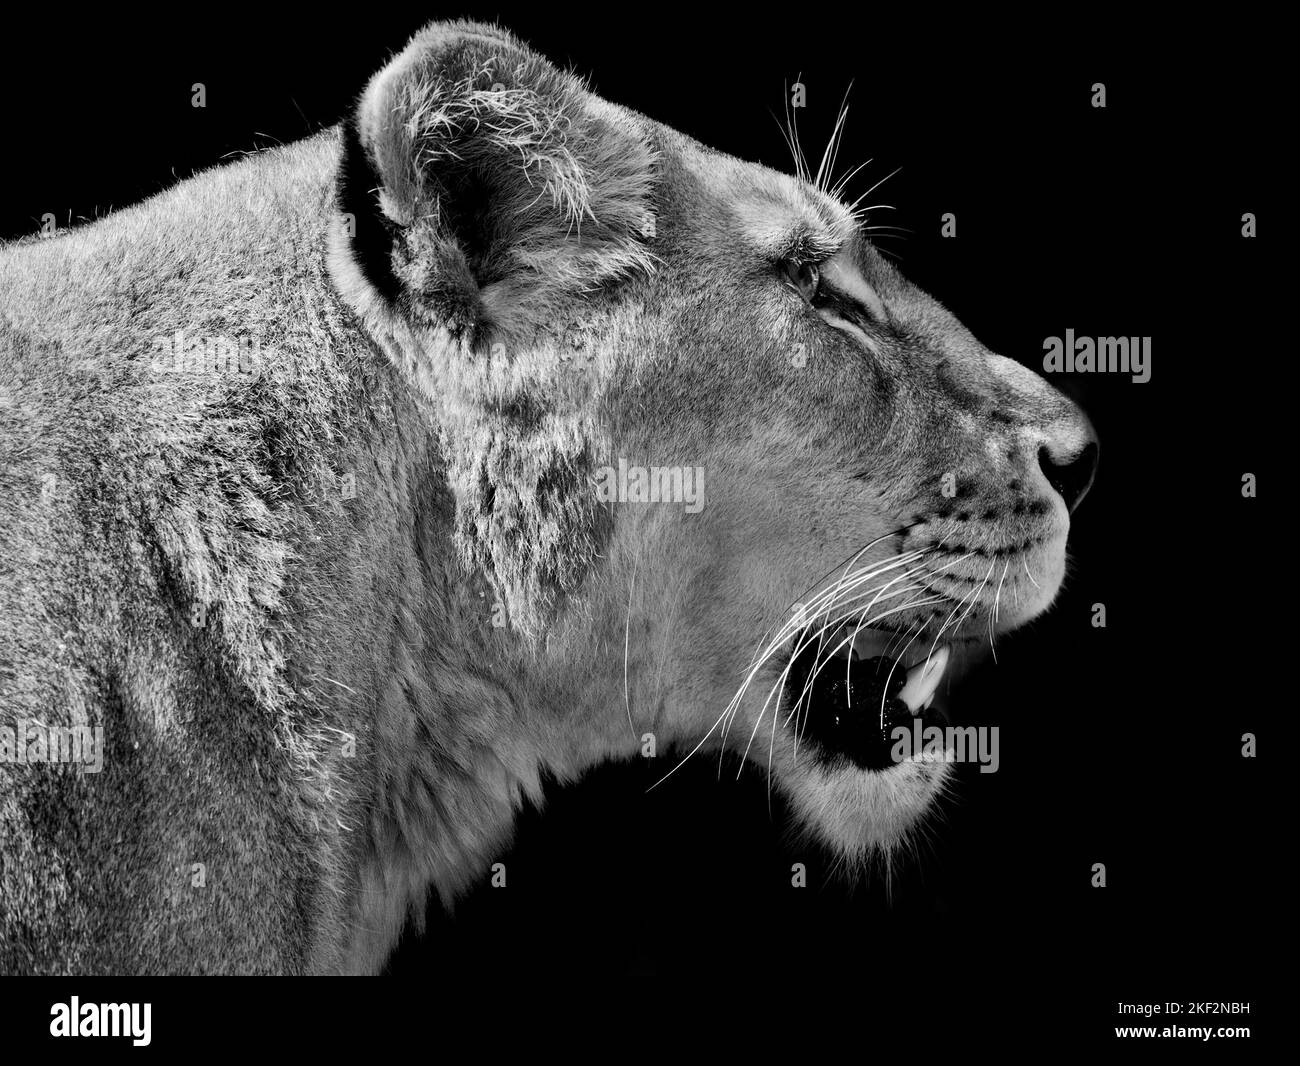 Il leone è un gatto ben muscoloso con corpo lungo, testa grande e gambe corte. Le dimensioni e l'aspetto variano considerevolmente tra i sessi. Foto Stock